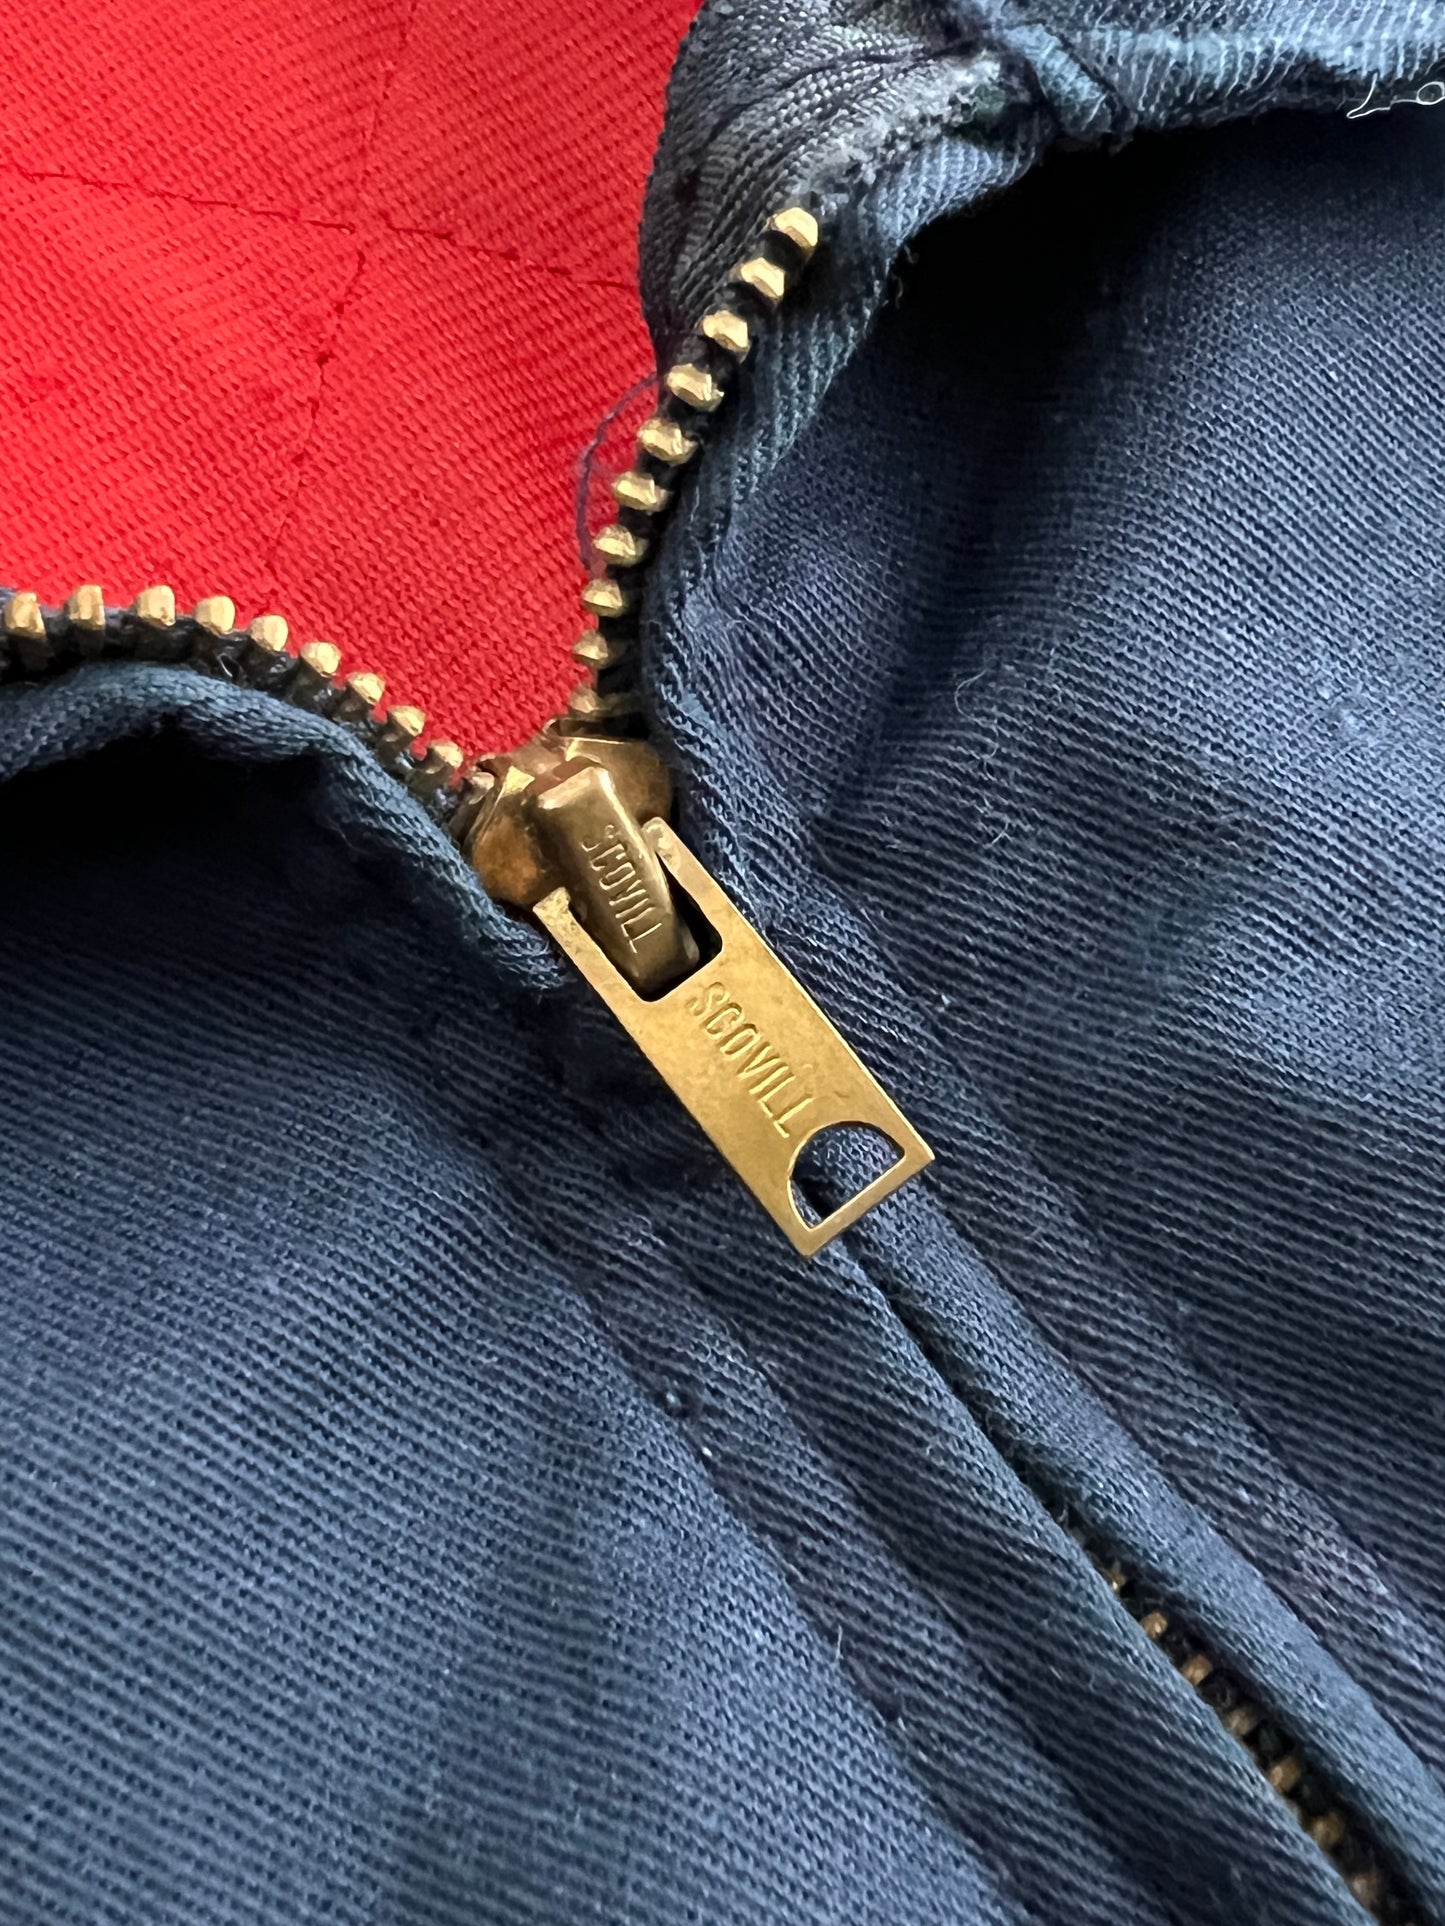 60's Quilt Lined Mechanic Jacket [L/XL]